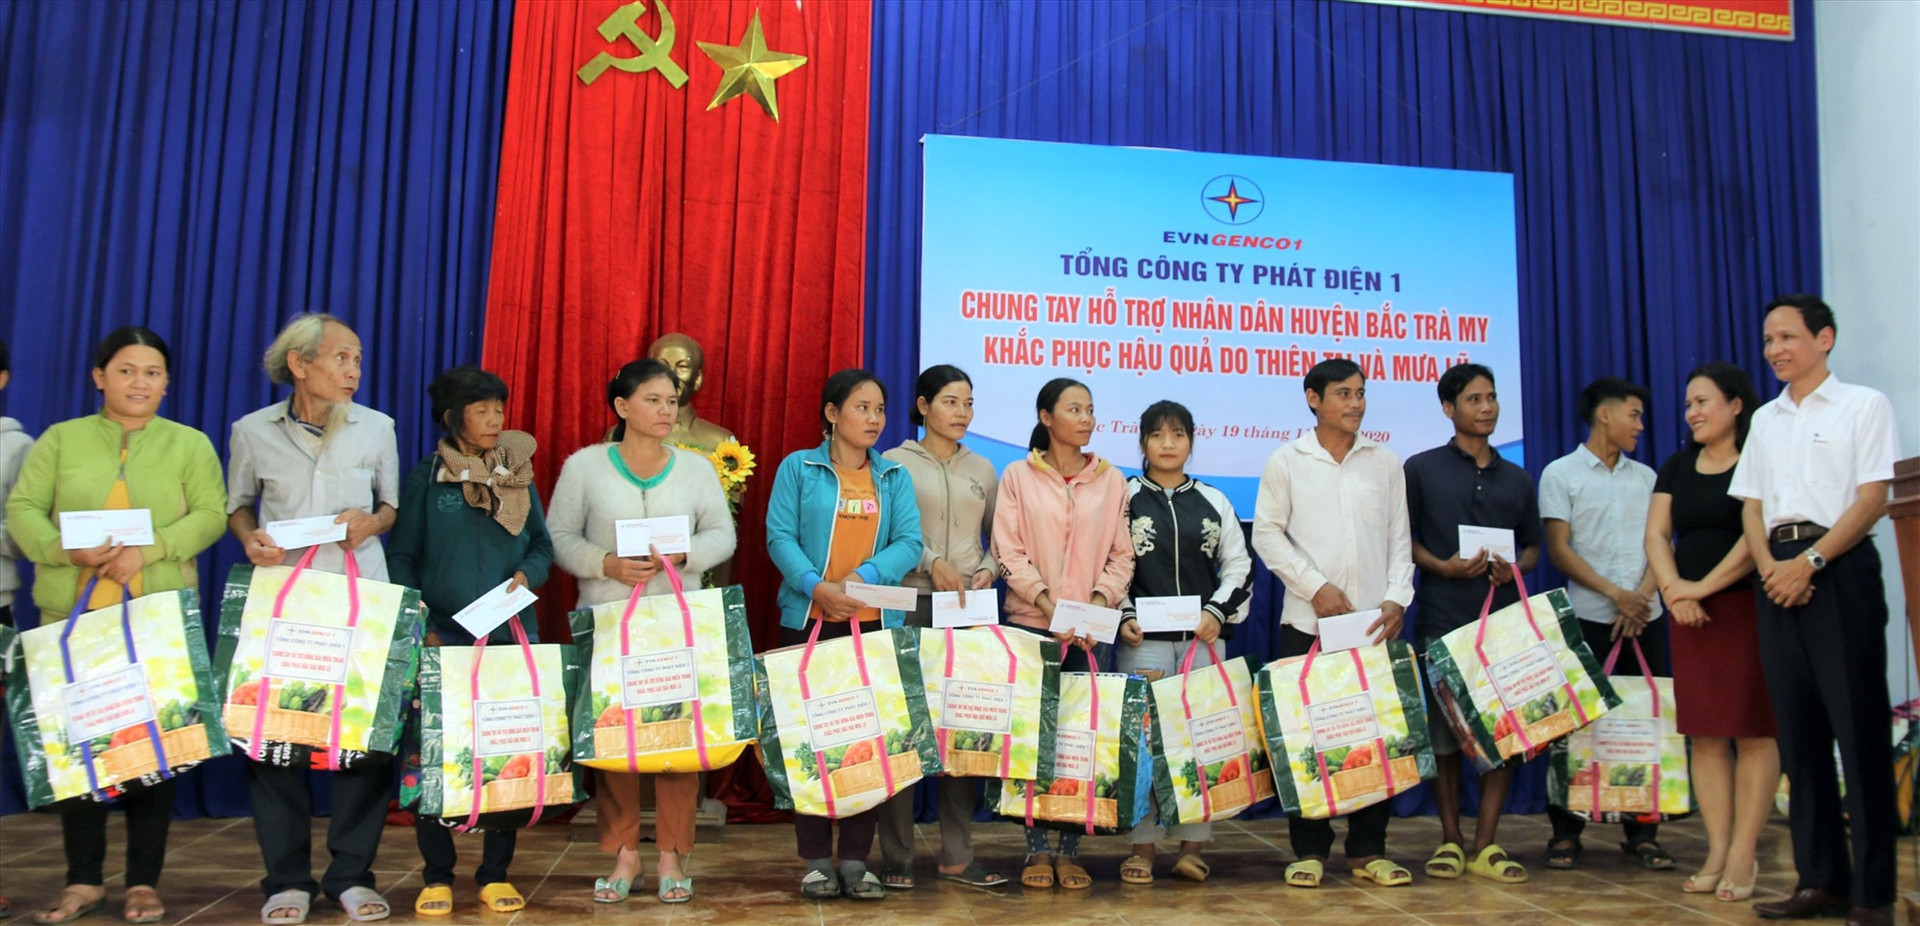 100 phần quà đã được trao tận tay người dân huyện Bắc Trà My.